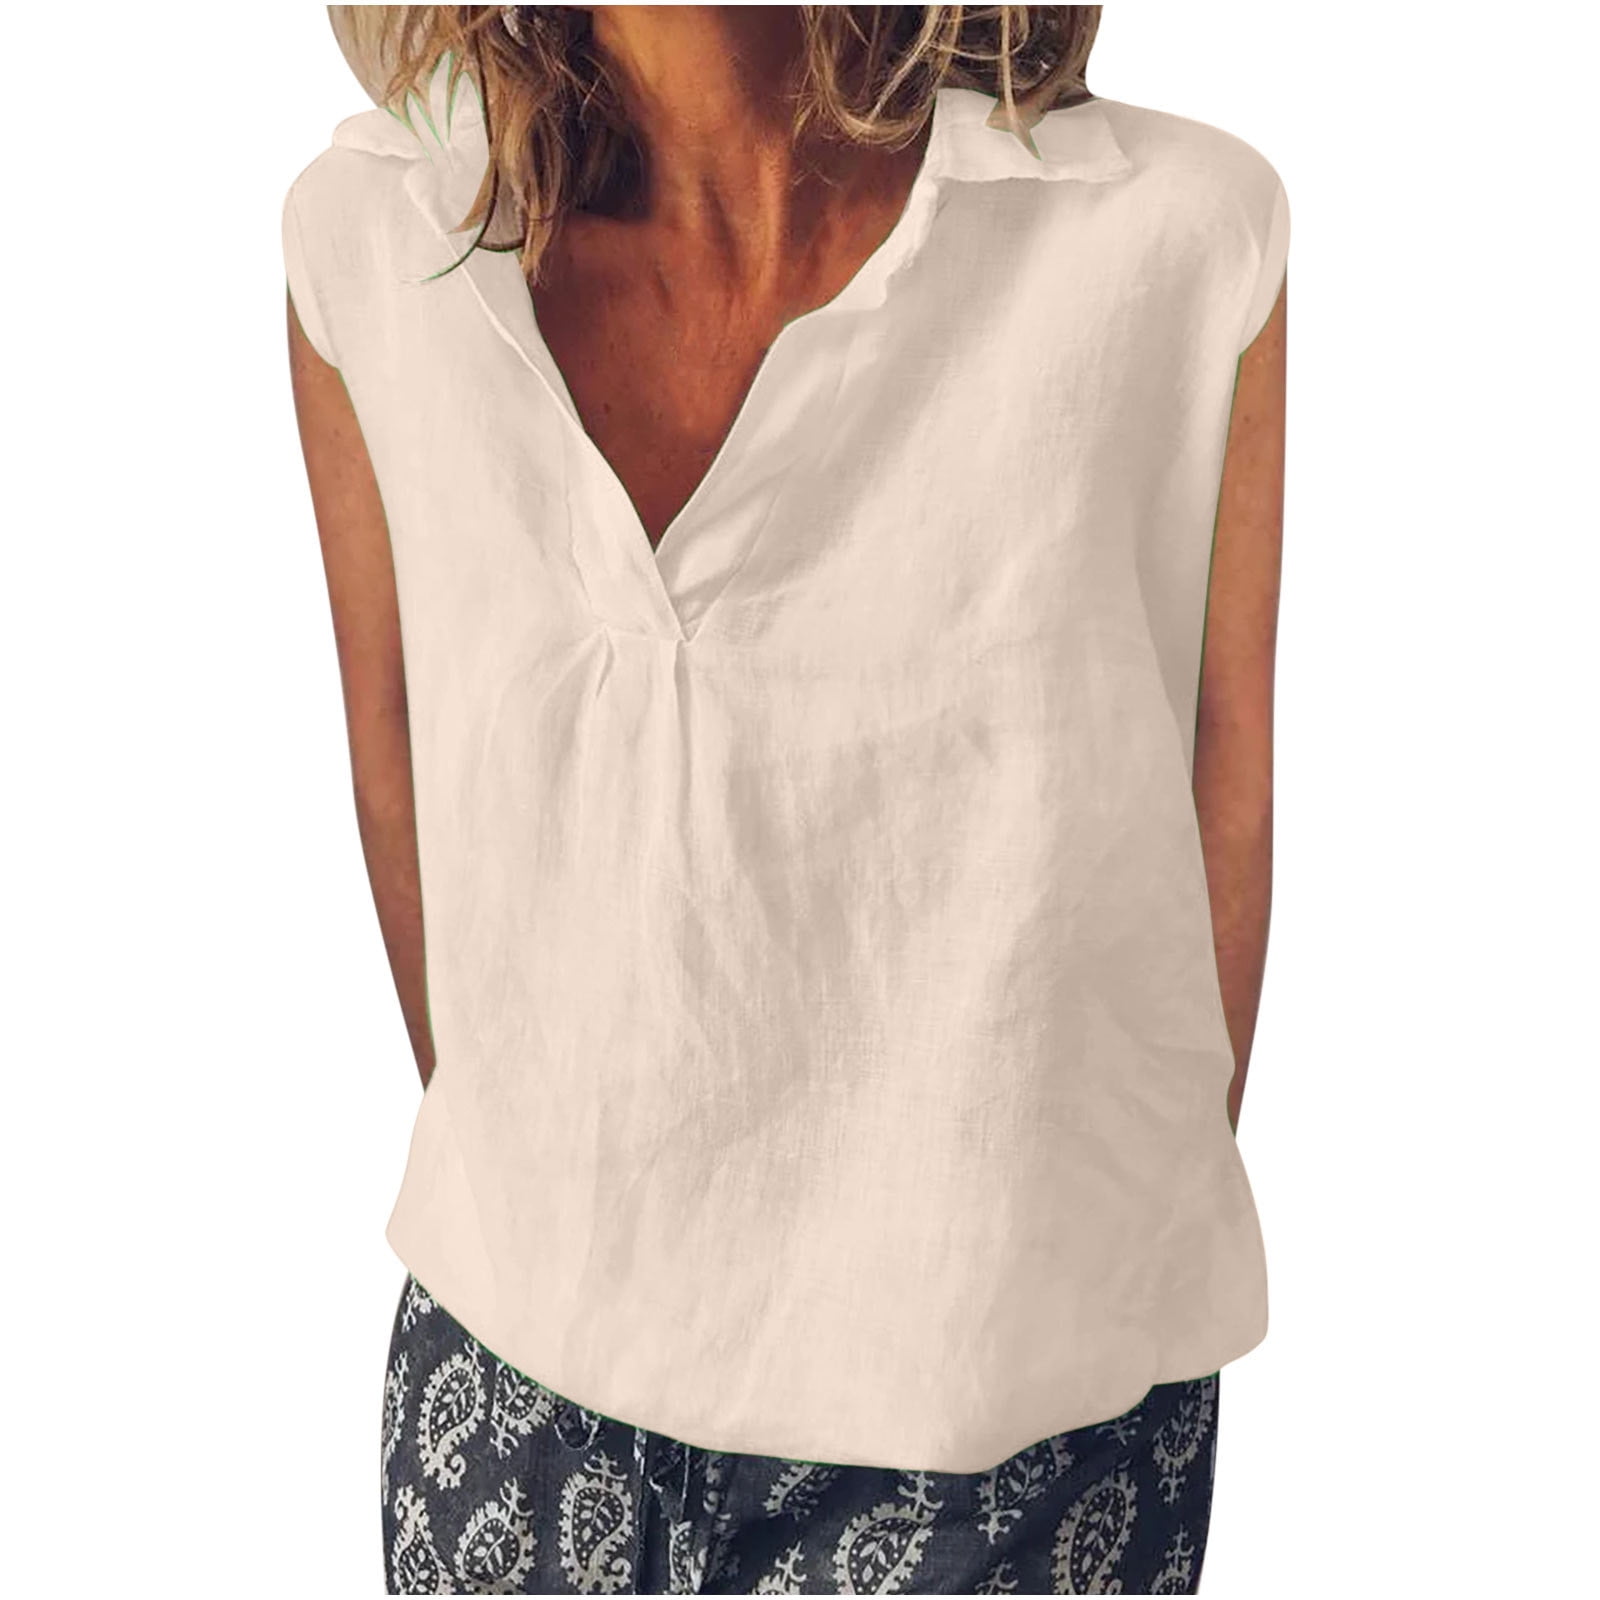 XFLWAM Linen Tank Tops for Women Lapel V Neck T-Shirts Sleeveless ...